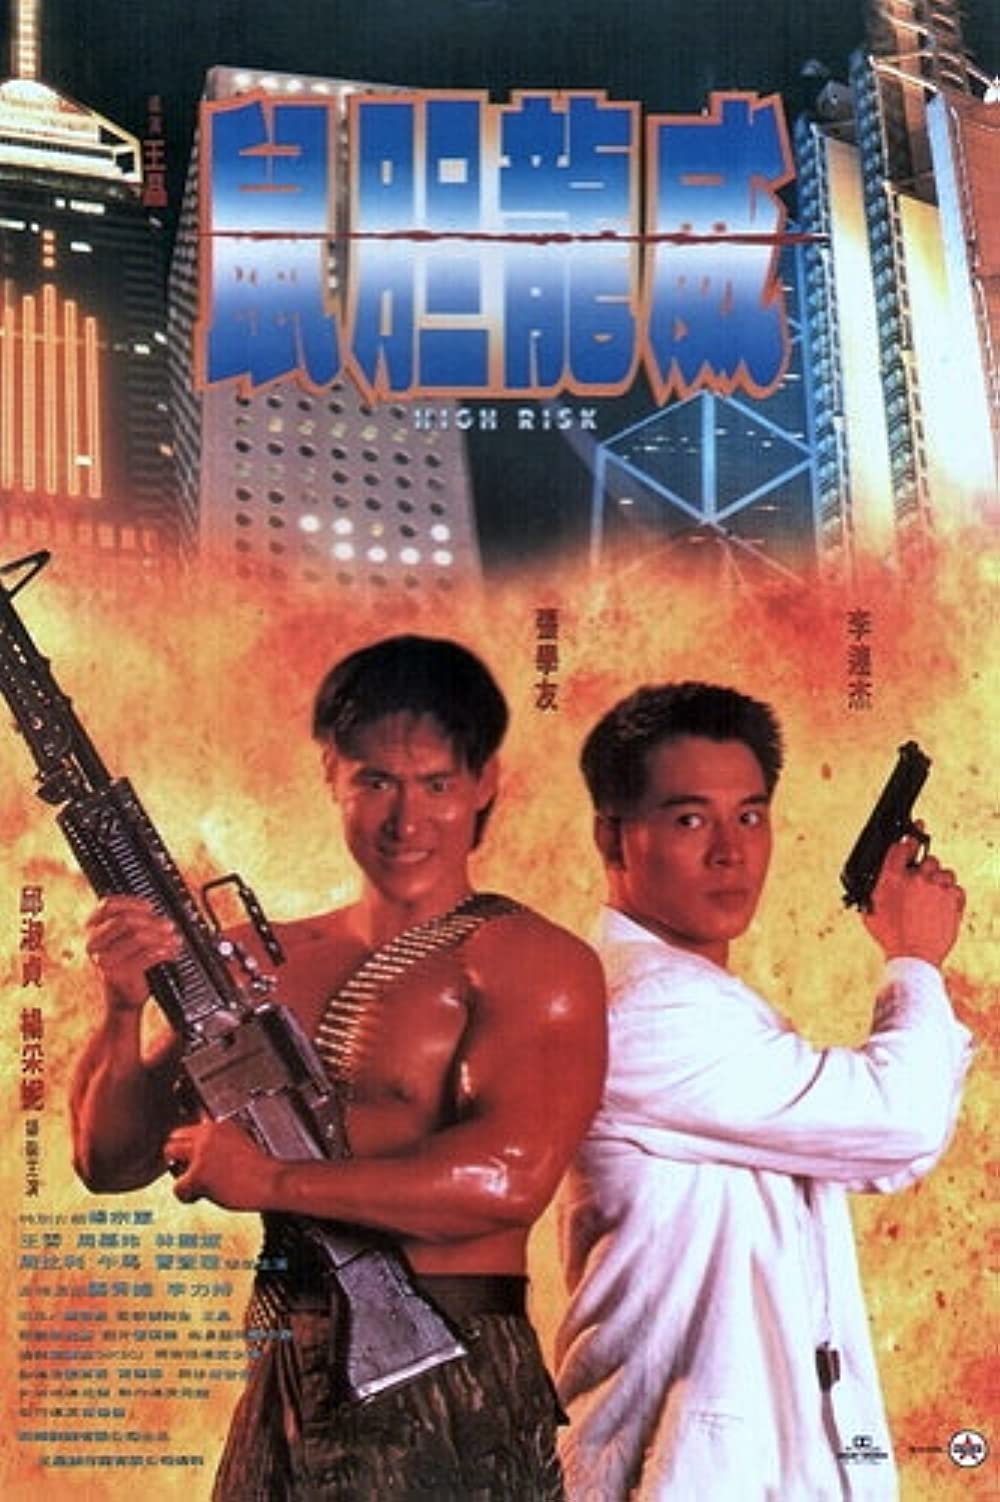 FULL MOVIE: High Risk (1995) [Action]